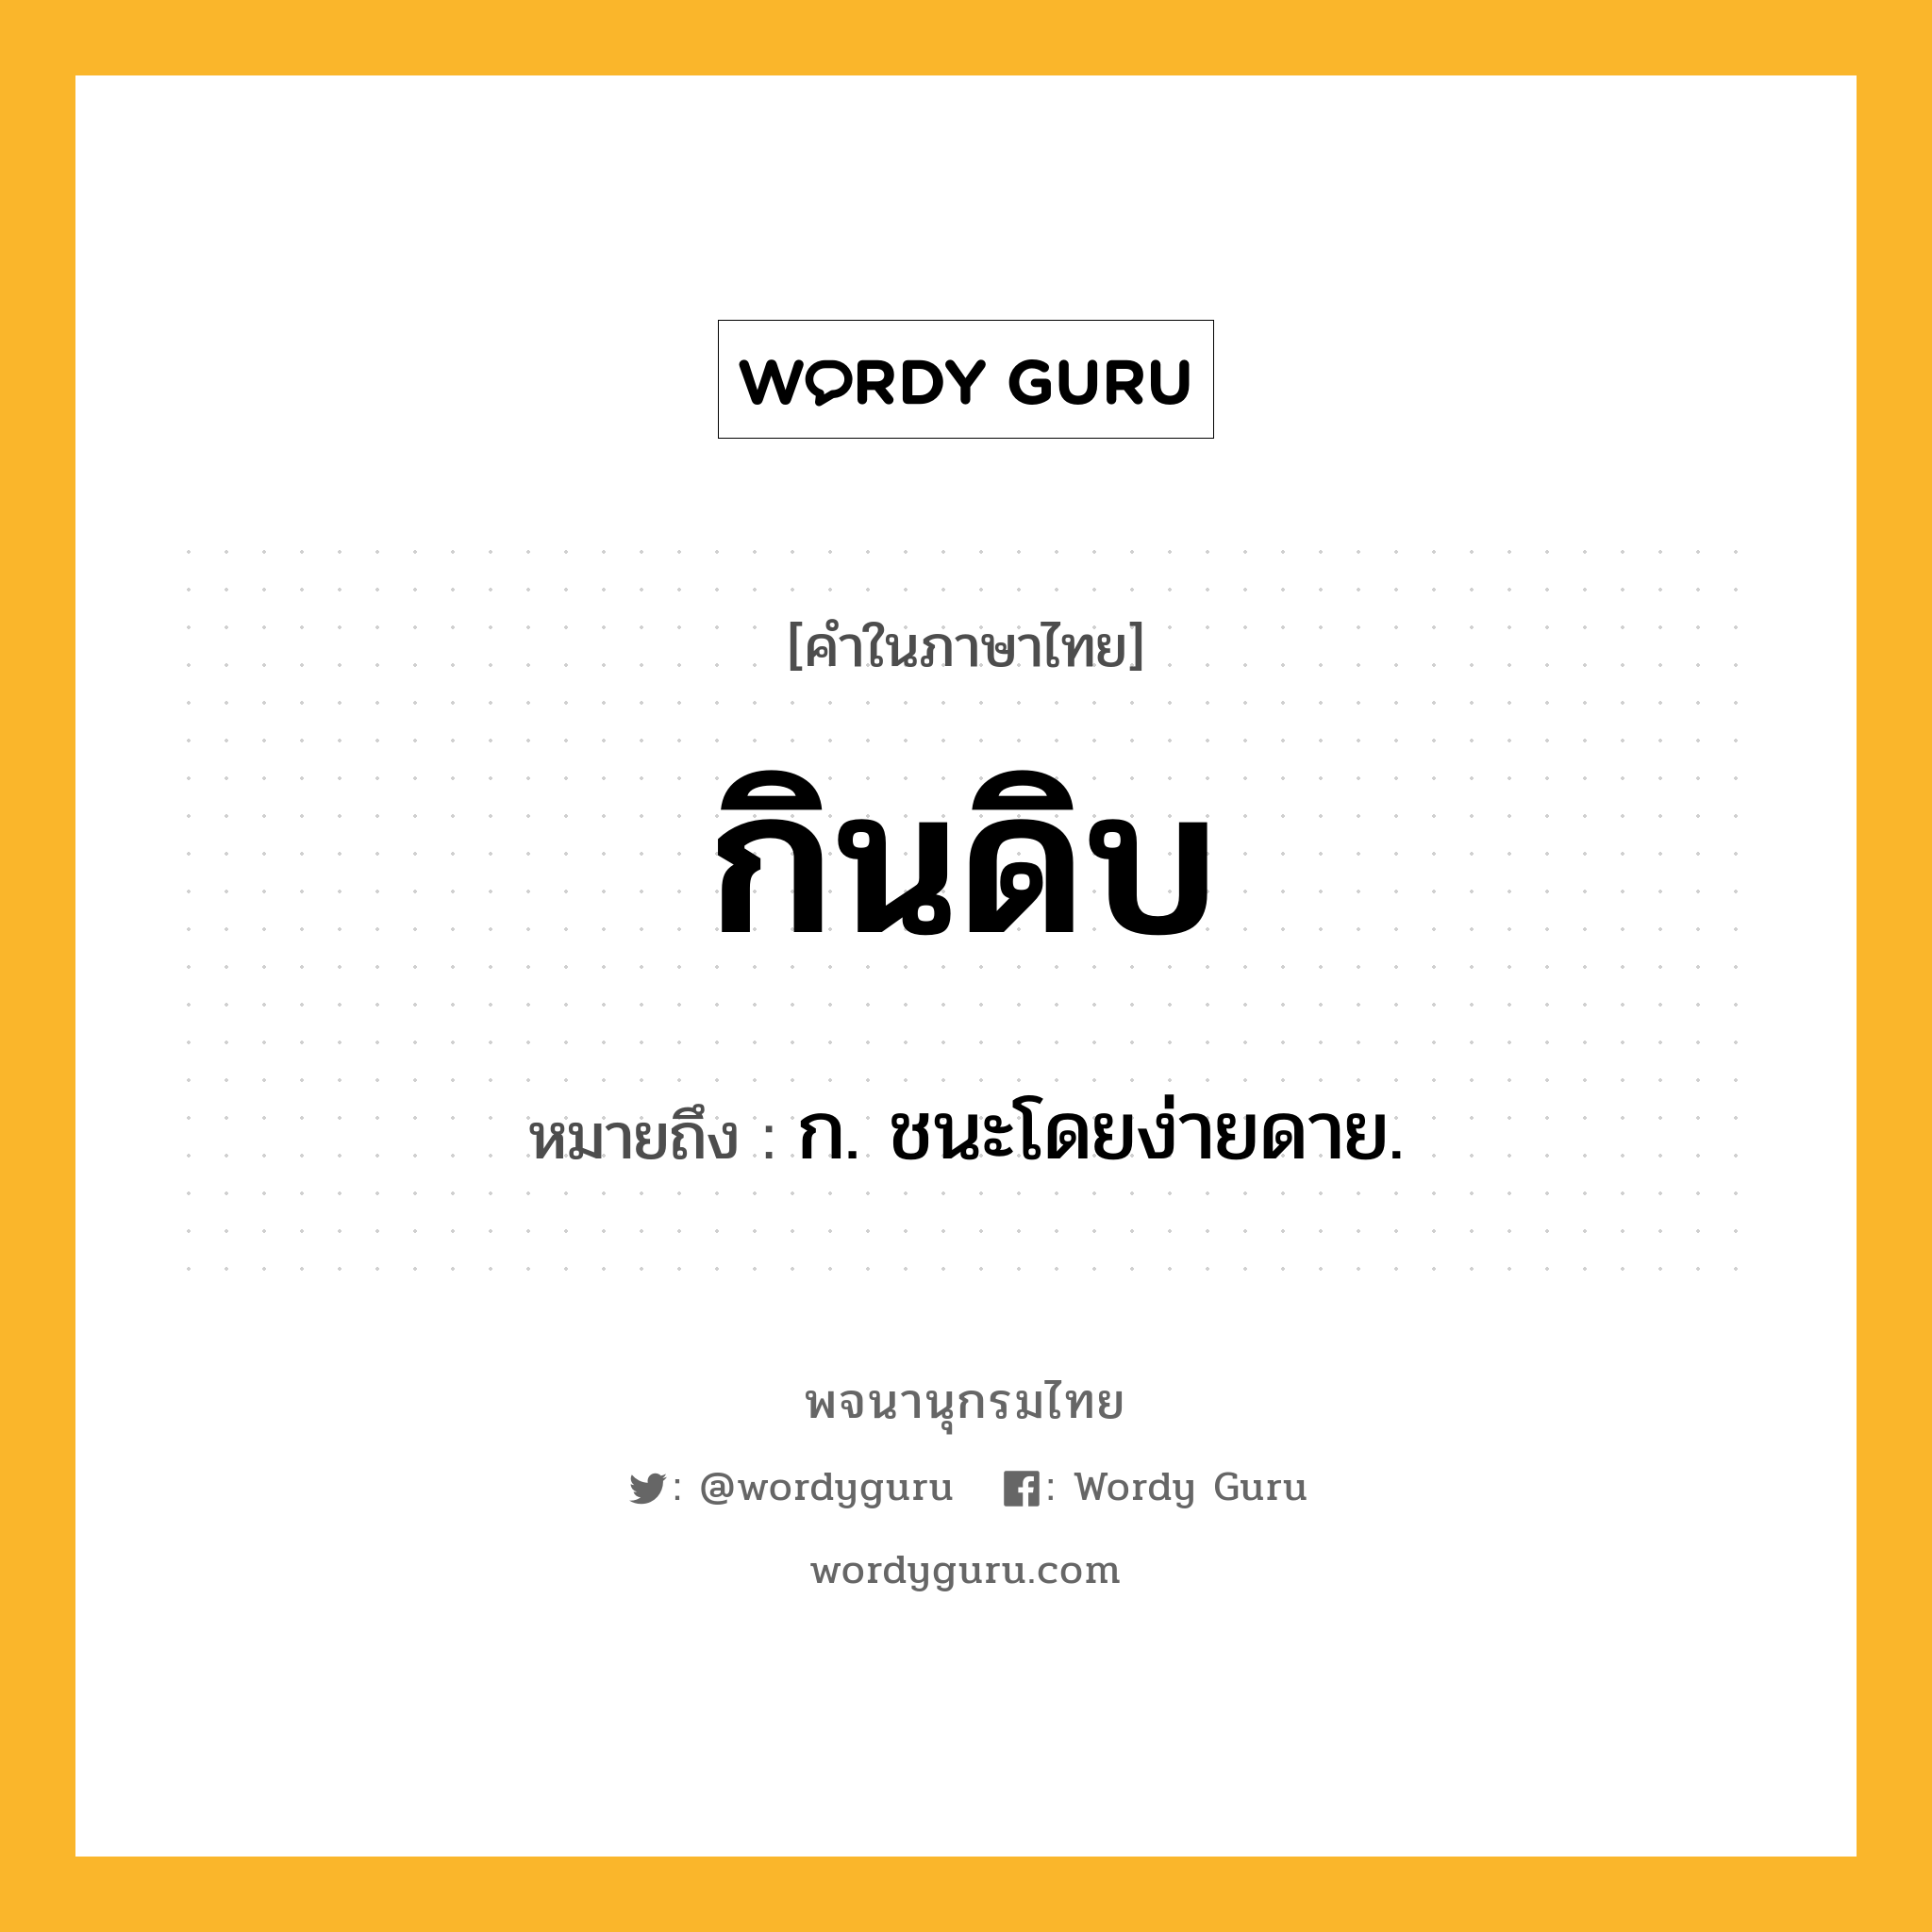 กินดิบ หมายถึงอะไร?, คำในภาษาไทย กินดิบ หมายถึง ก. ชนะโดยง่ายดาย.